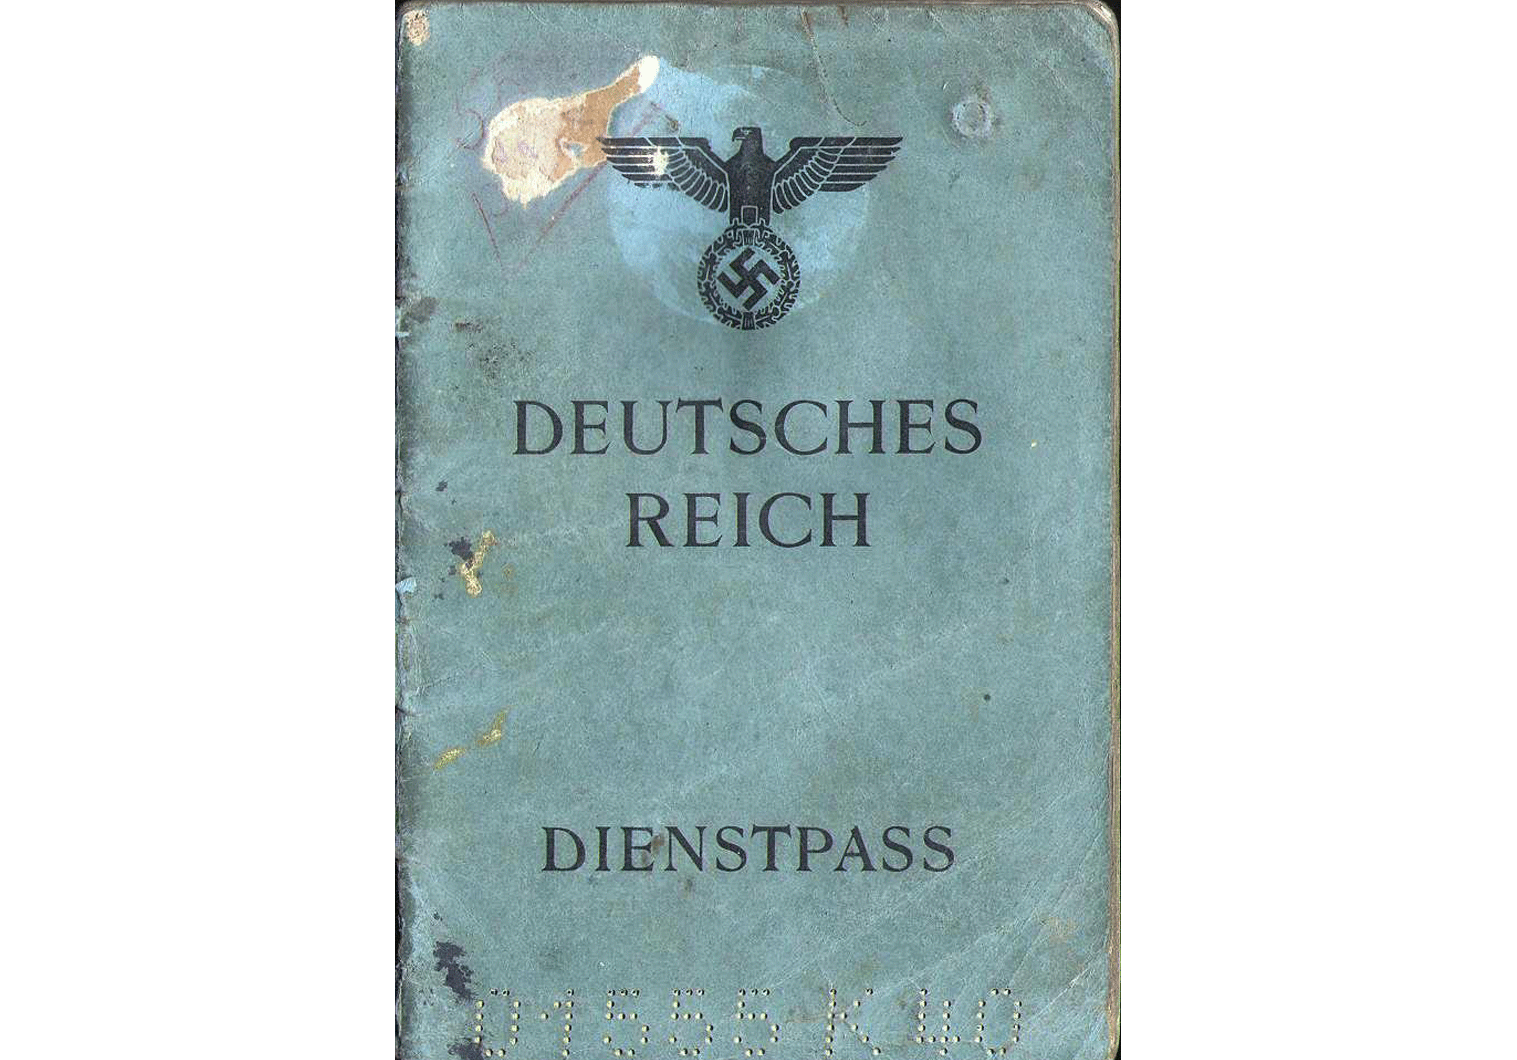 1944 German Service-Passport
Bucharest war time issued Dienstpass.